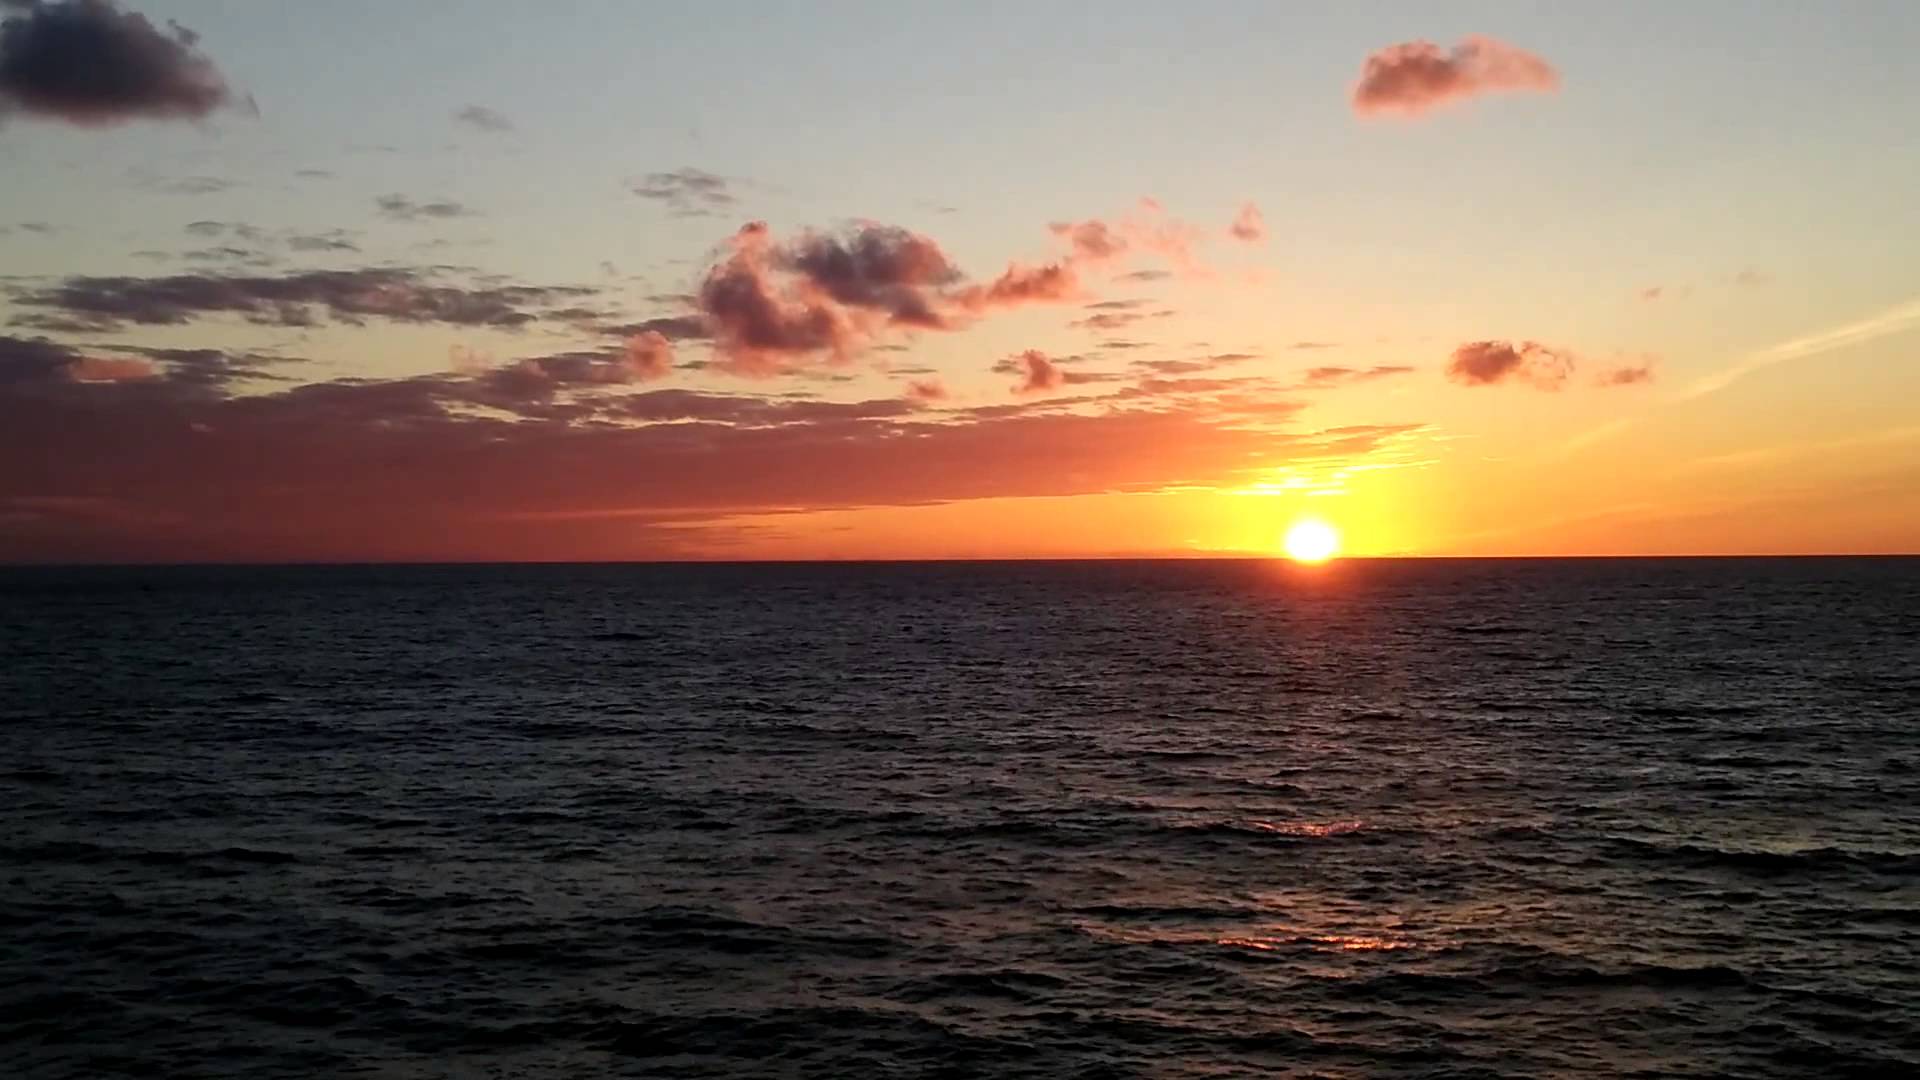 Sunset at sea photo